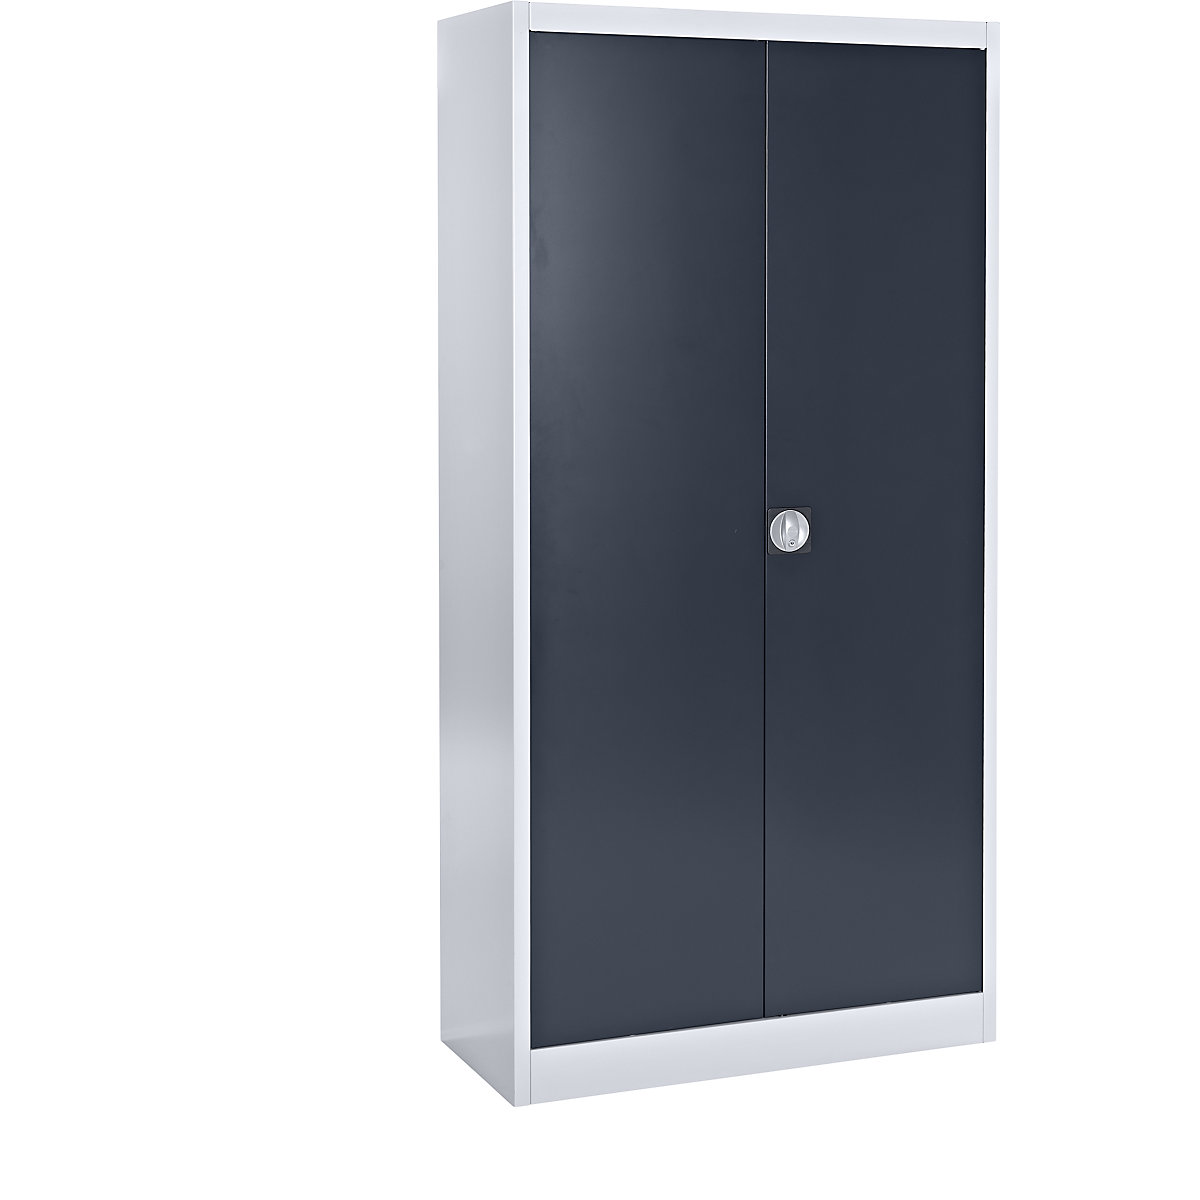 mauser – Oceľová skriňa s otočnými dverami, 4 police, hĺbka 420 mm, strieborná / antracitová šedá